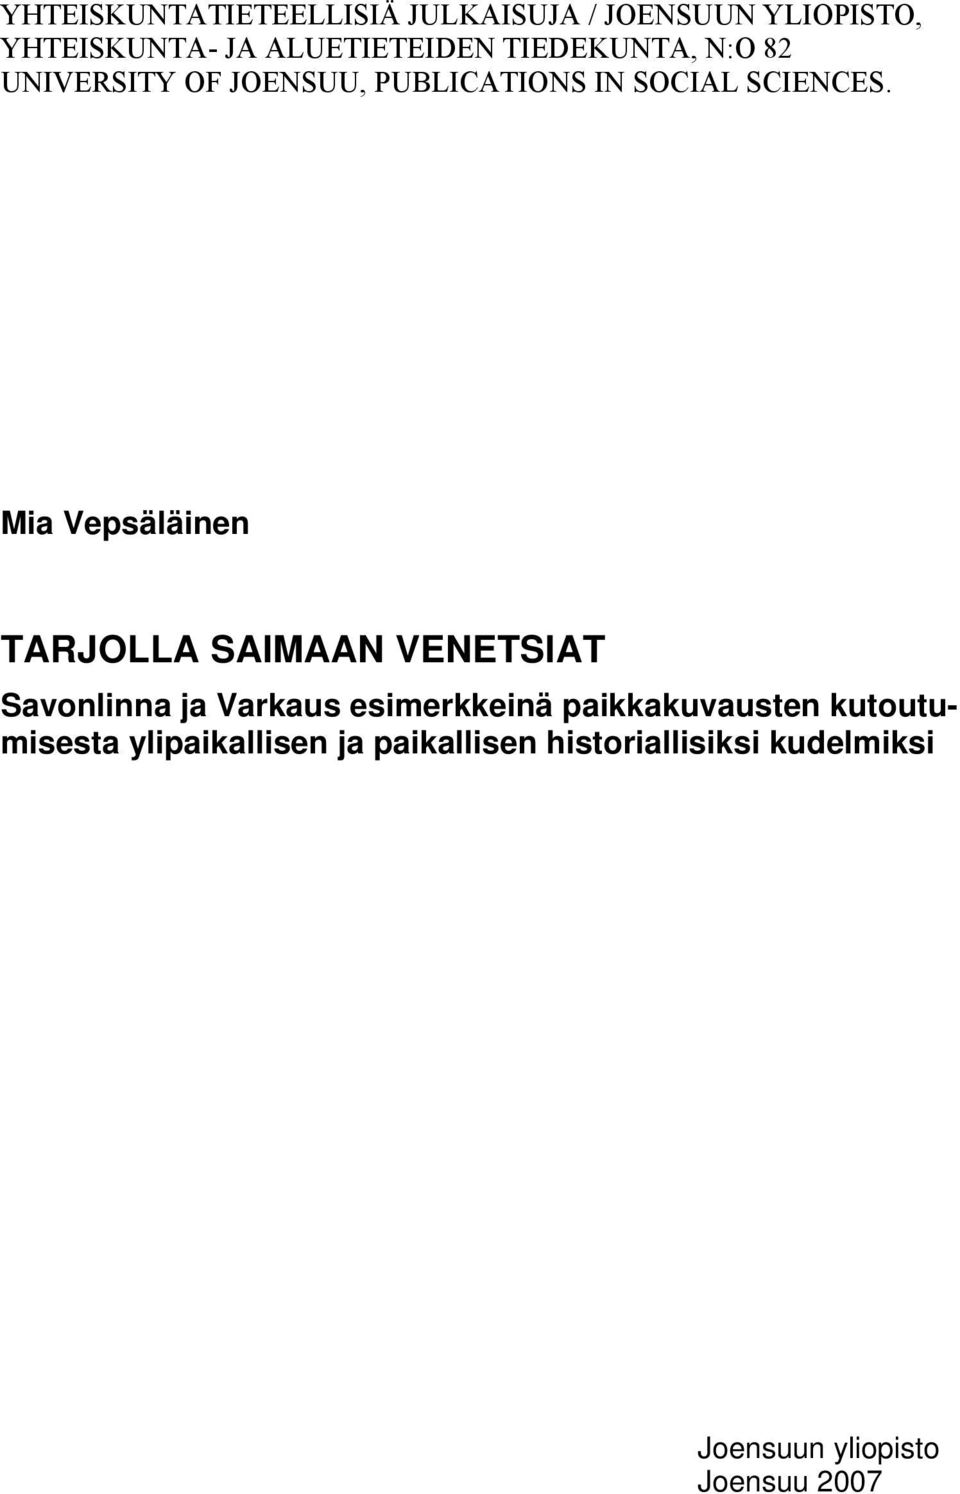 Mia Vepsäläinen TARJOLLA SAIMAAN VENETSIAT Savonlinna ja Varkaus esimerkkeinä